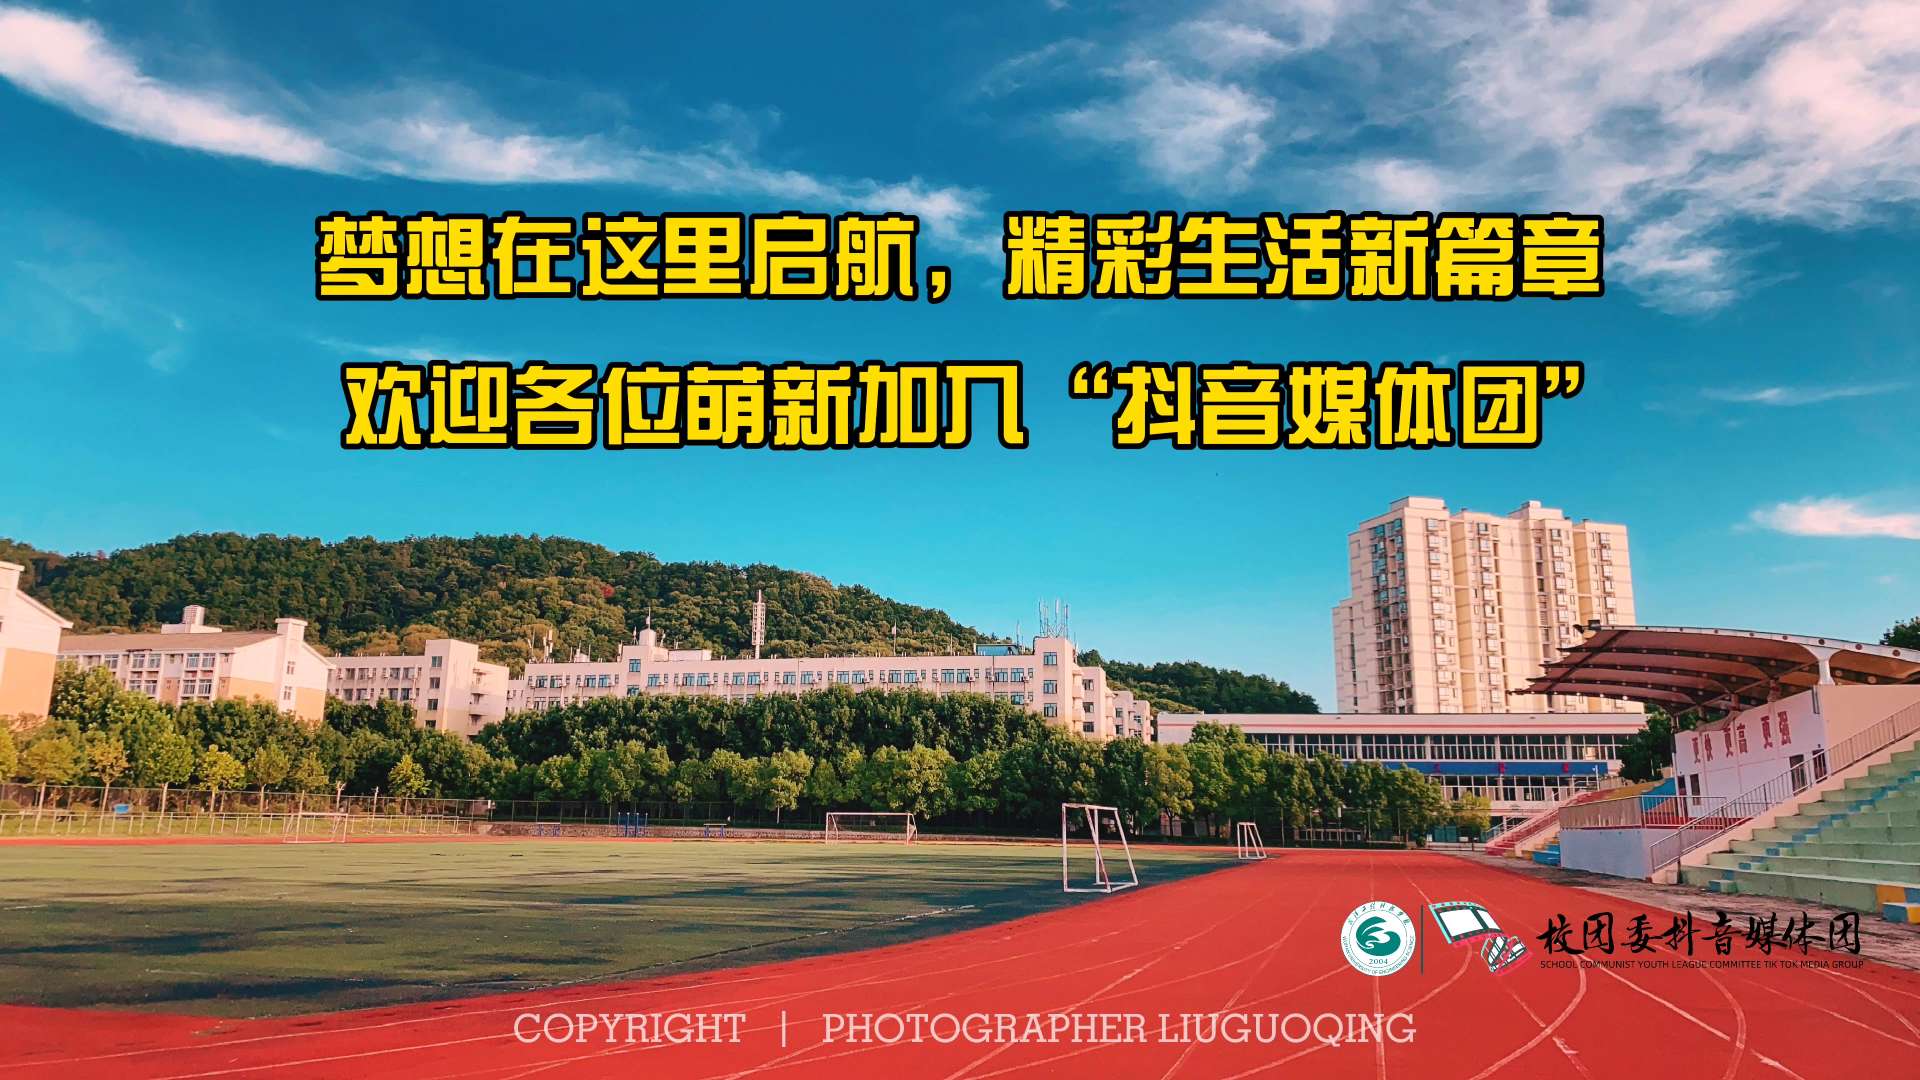 武汉工程科技学院新生宿舍宣传视频